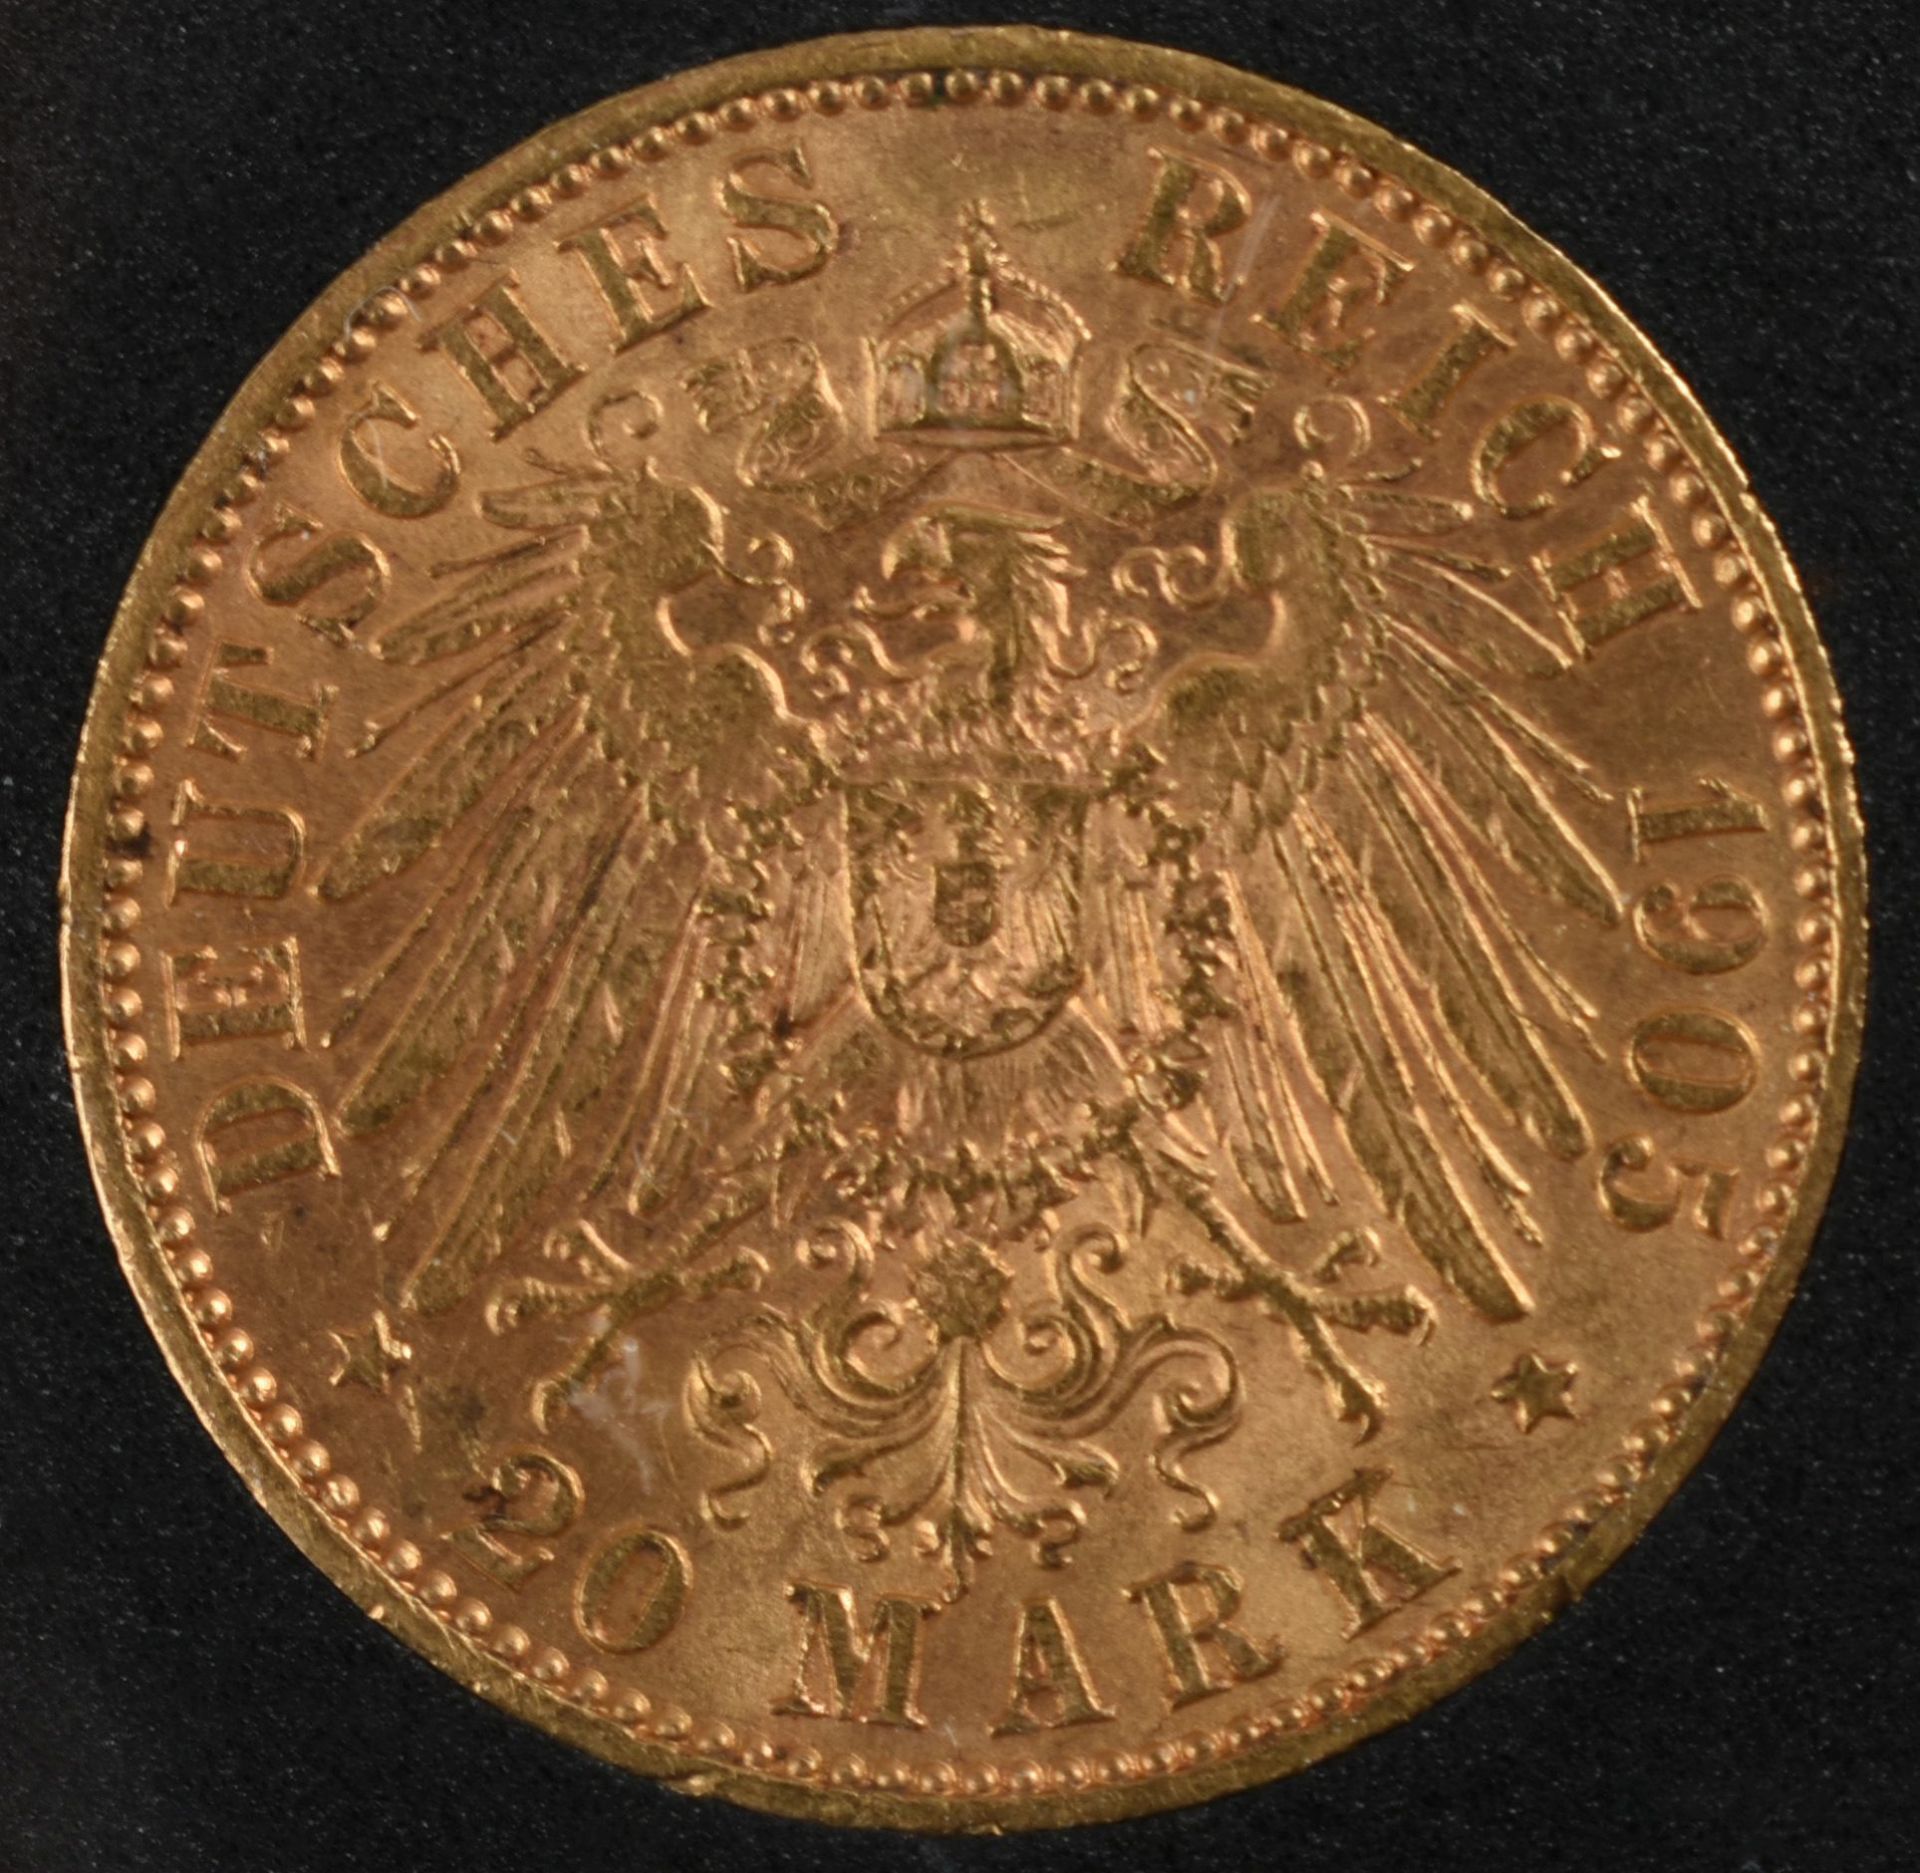 Goldmünze Sachsen 1905 20 Mark in Gold, 900/1000, 7,96 g, D ca. 22,5 mm, av. Friedrich August - Bild 3 aus 3